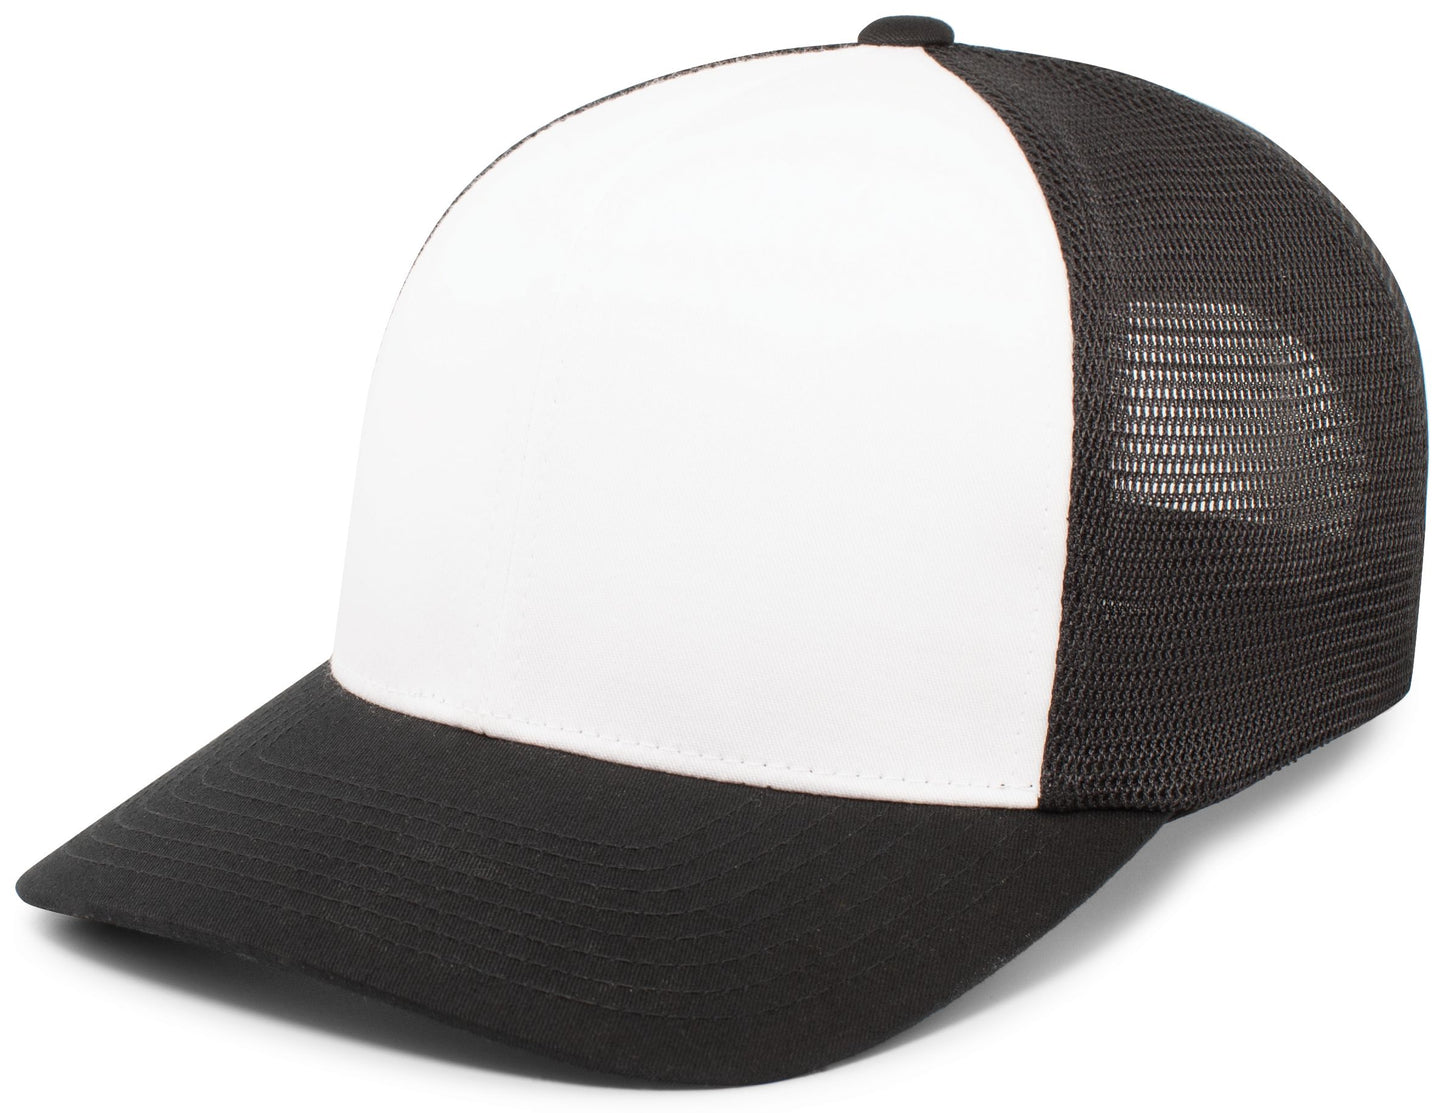 PACIFIC HEADWEAR - TRUCKER FLEXFIT® SNAPBACK CAP